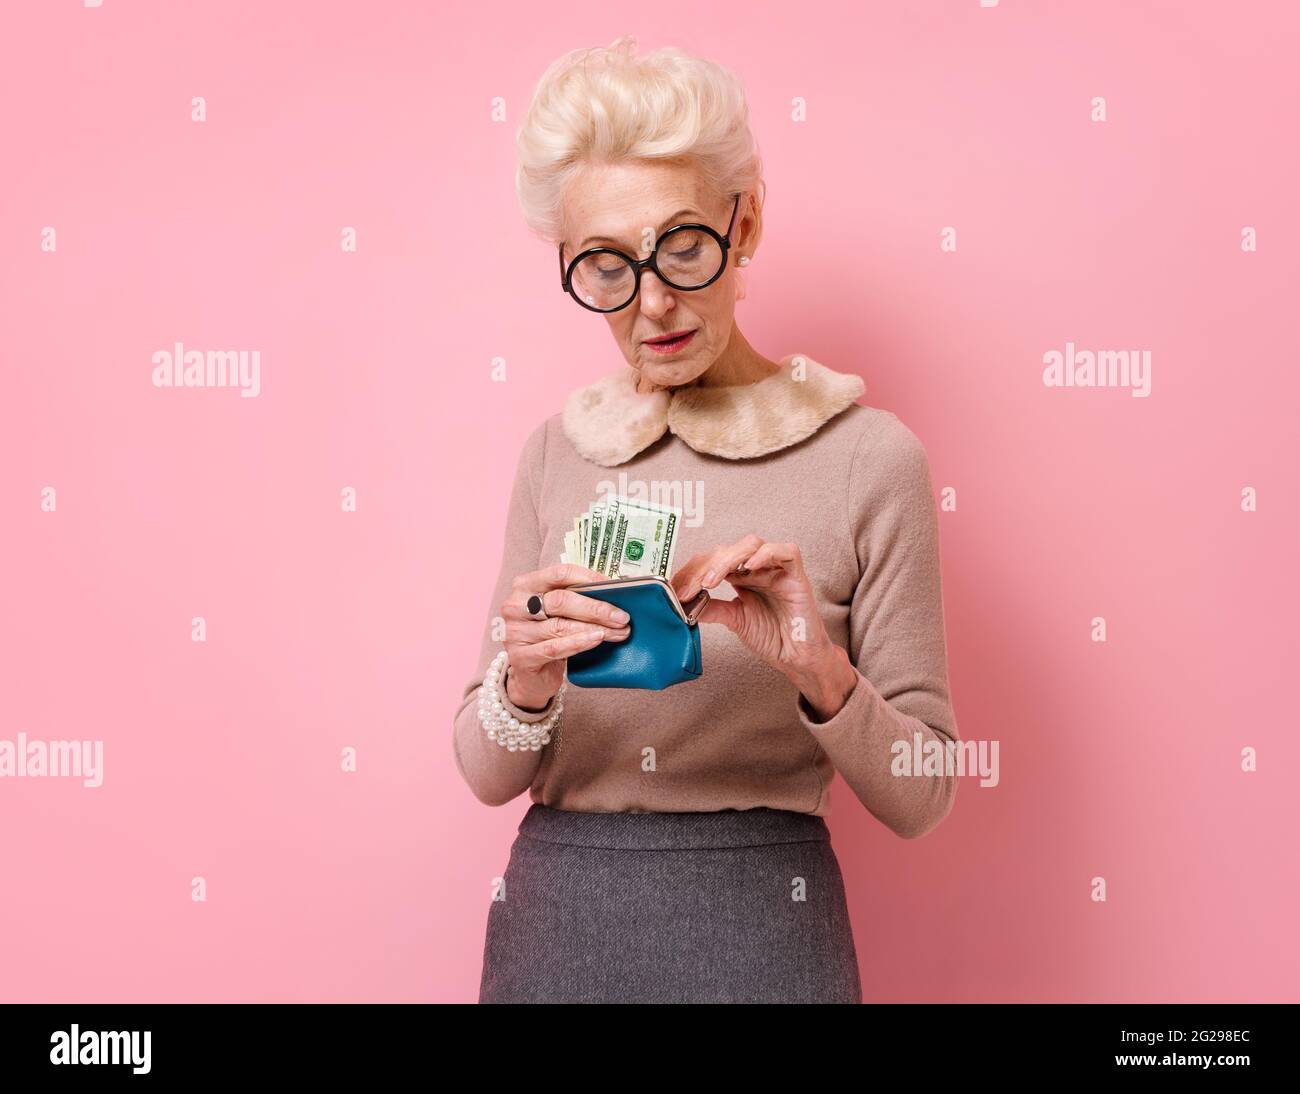 Donna triste che guarda il suo portafoglio. Foto di donna anziana gentile indossa occhiali su sfondo rosa. Foto Stock